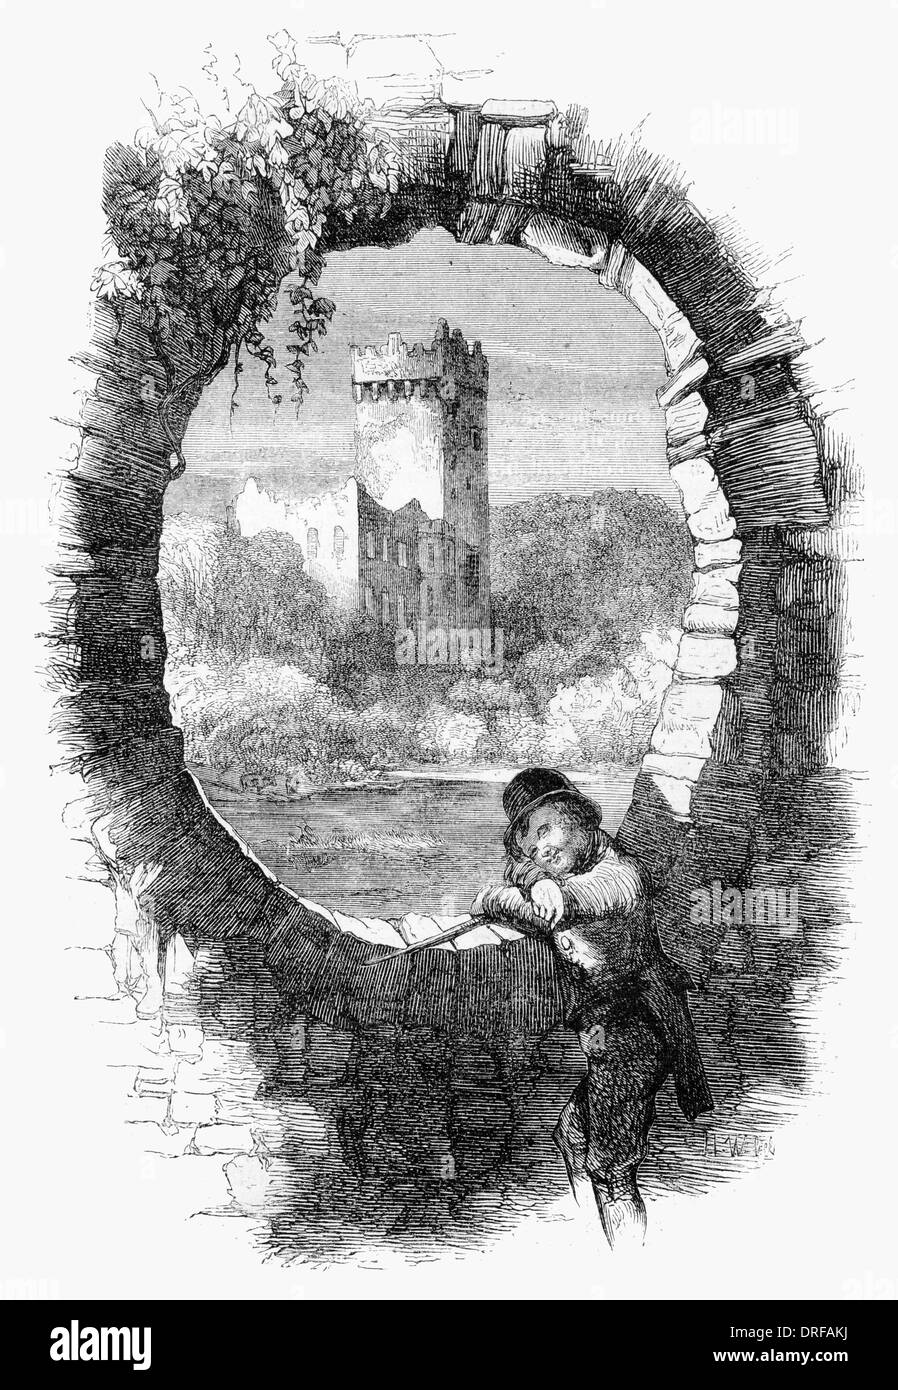 Le château de Blarney, comté de Cork. Du judas sur le pont. Dessiné par Mahony circa1854 Banque D'Images